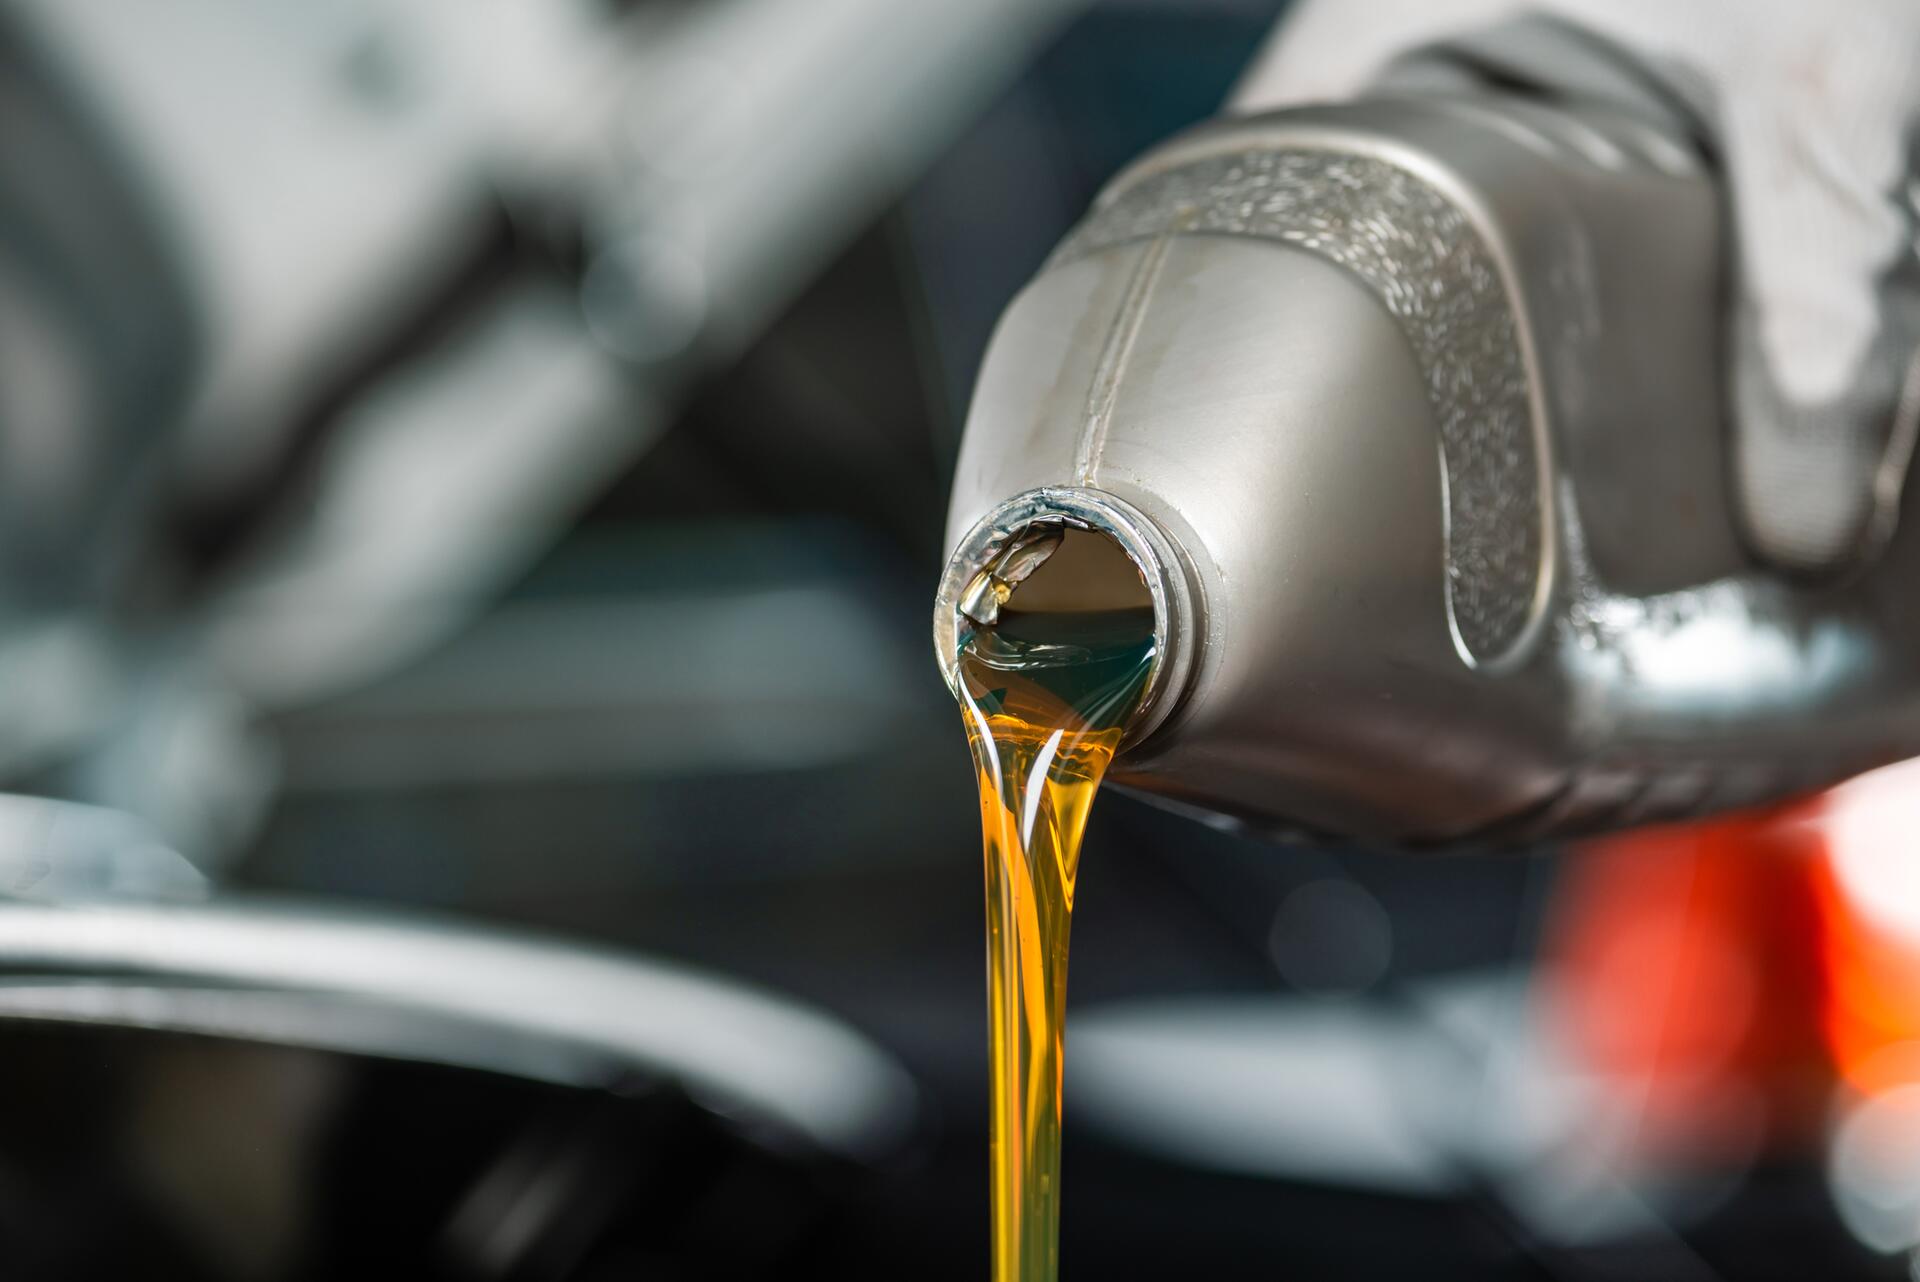 Technický list oleje – víte, co do svého auta lijete? – 1. díl